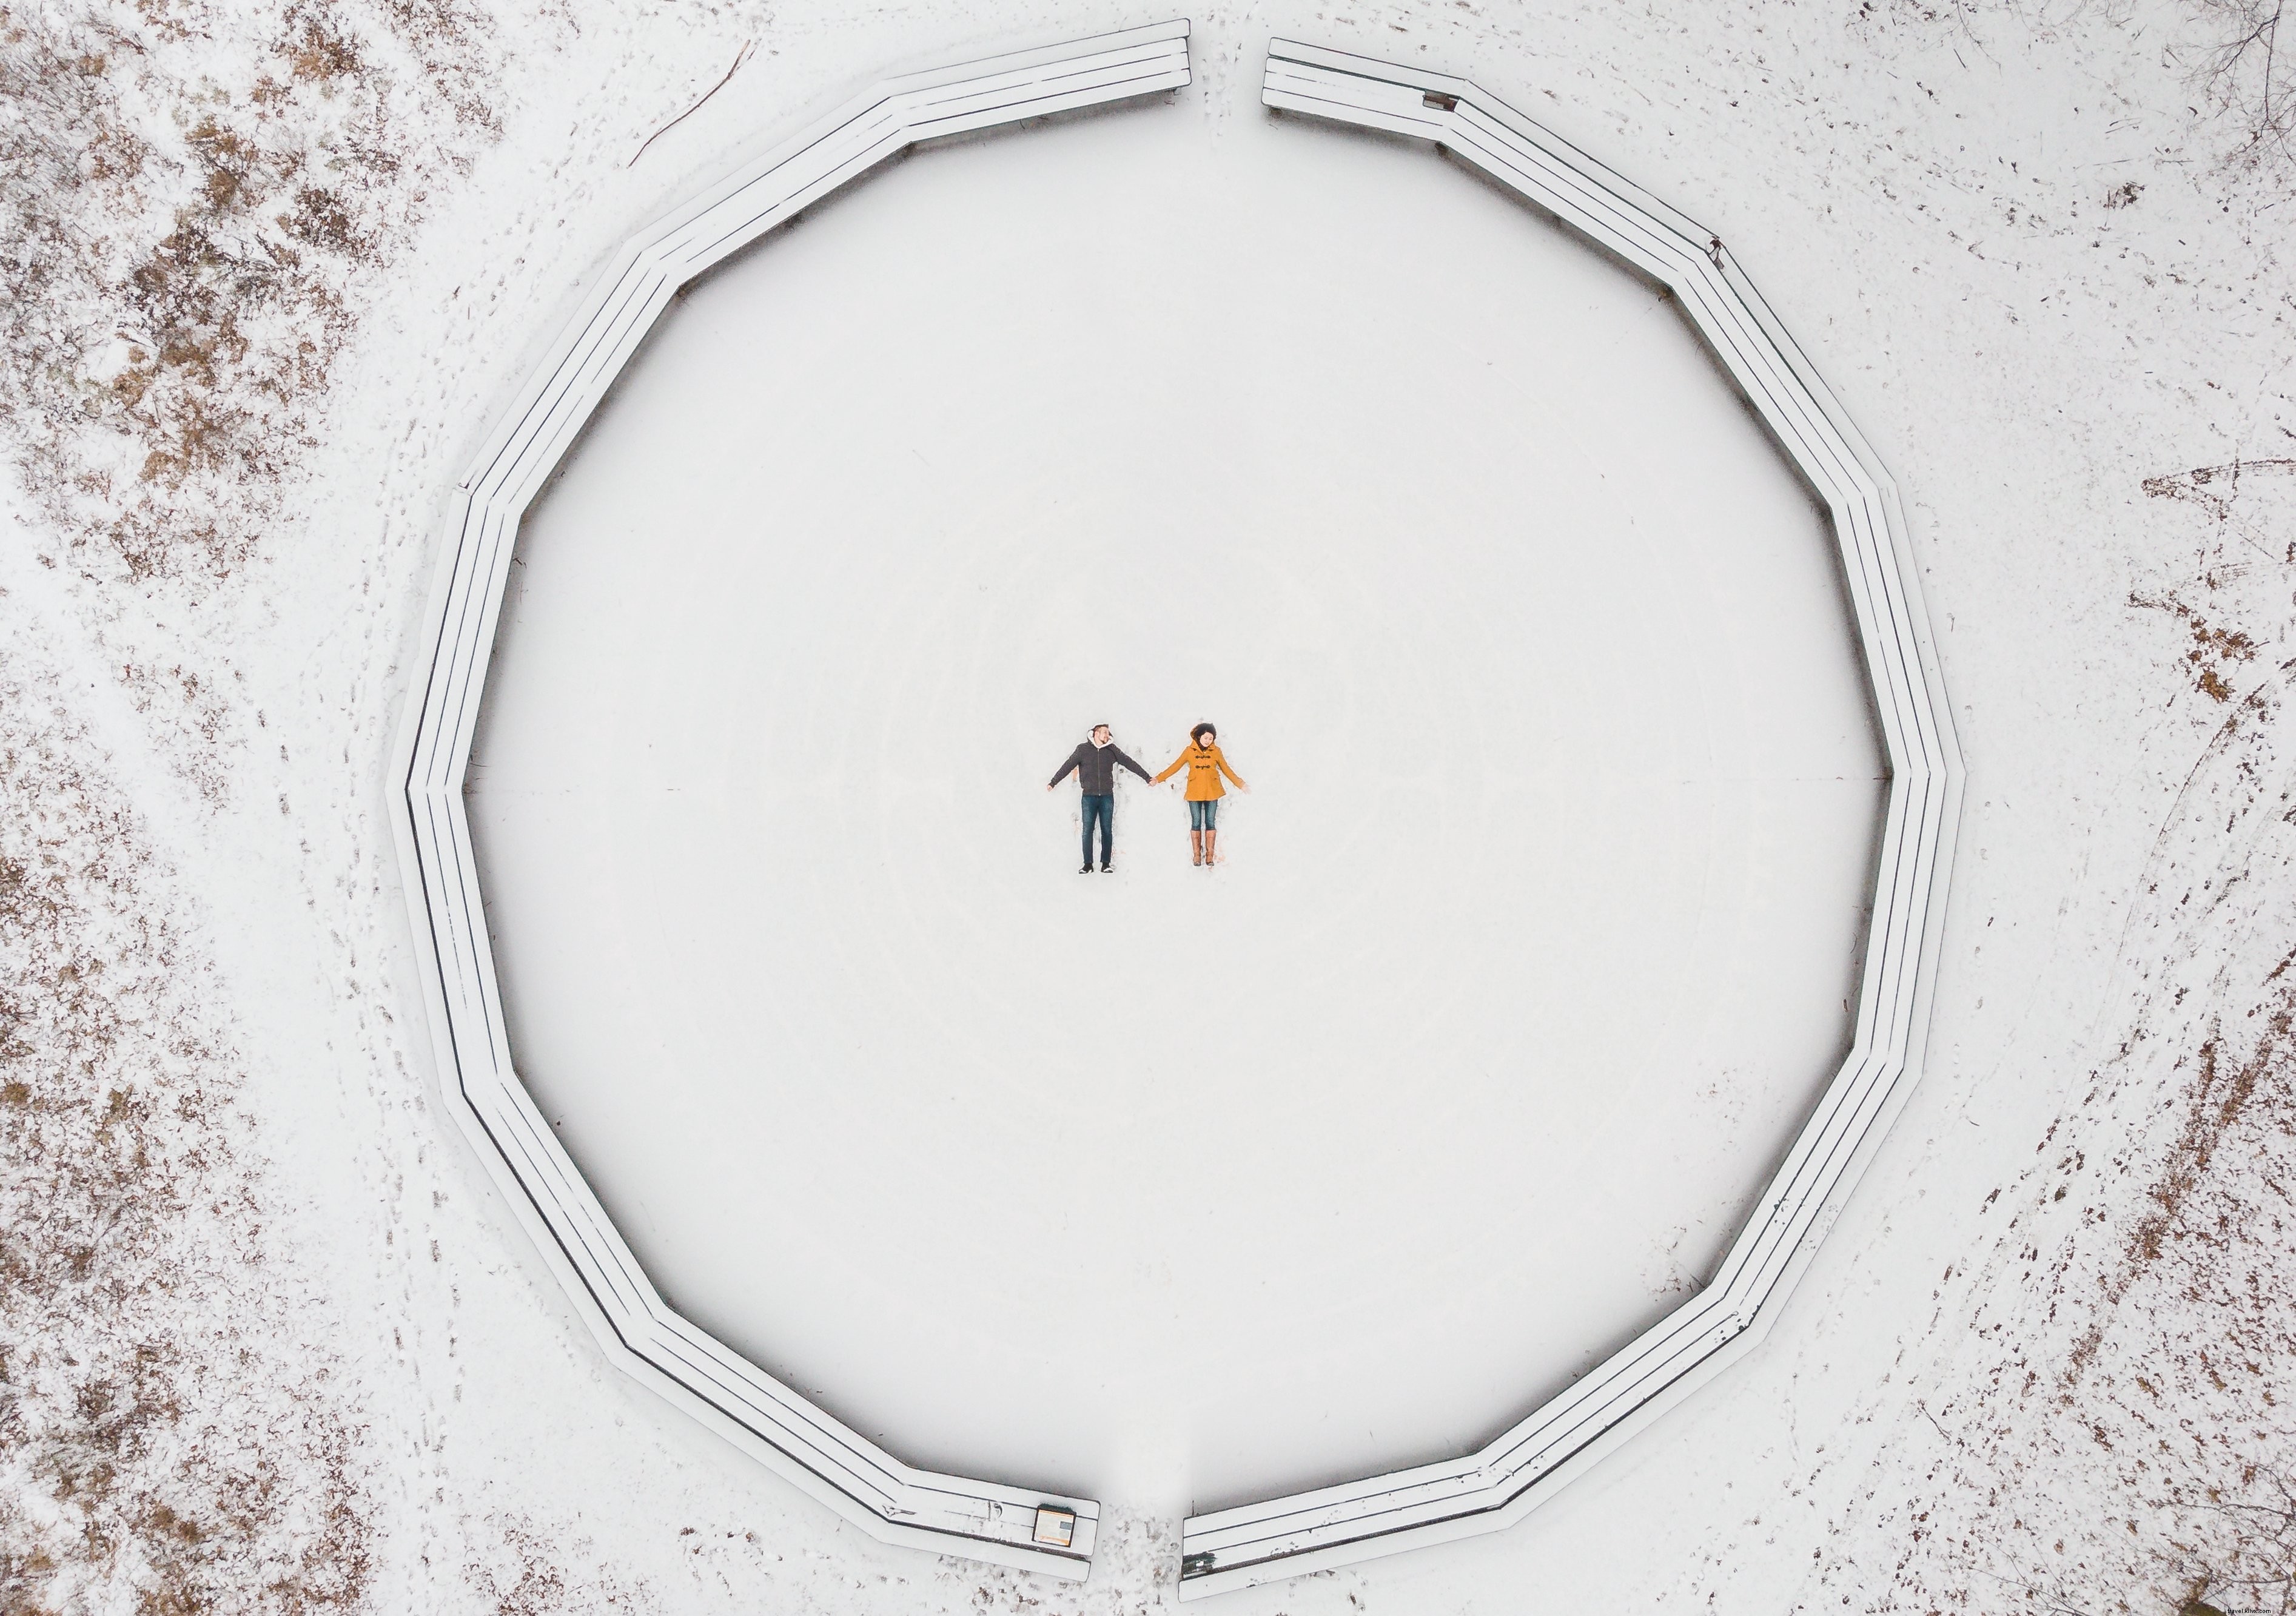 Vista aérea de una pareja haciendo fotos de Ángeles de nieve